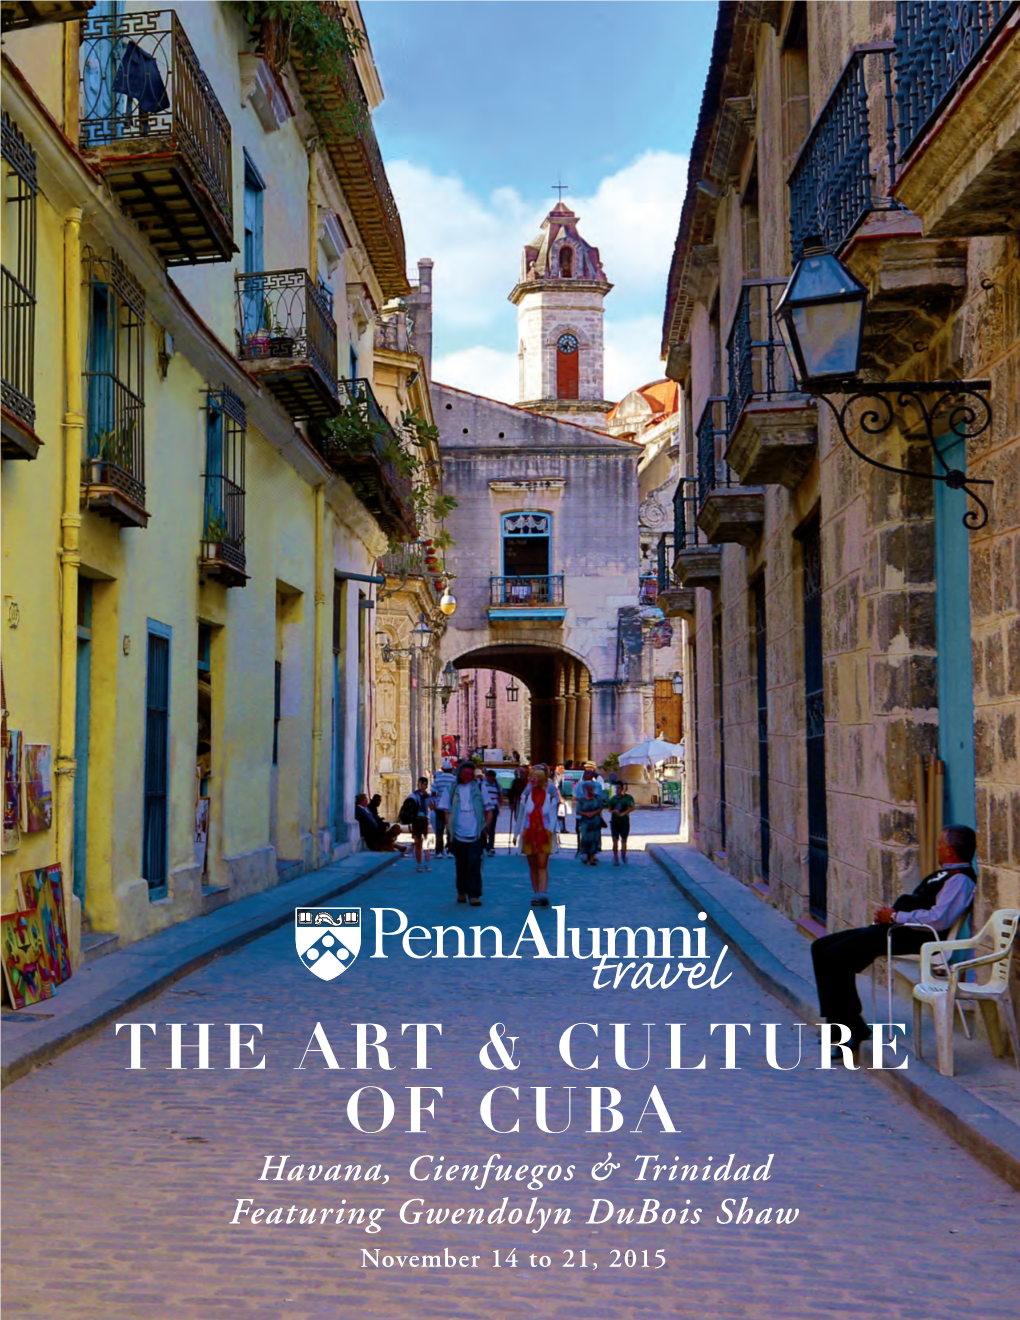 The Art & Culture of Cuba